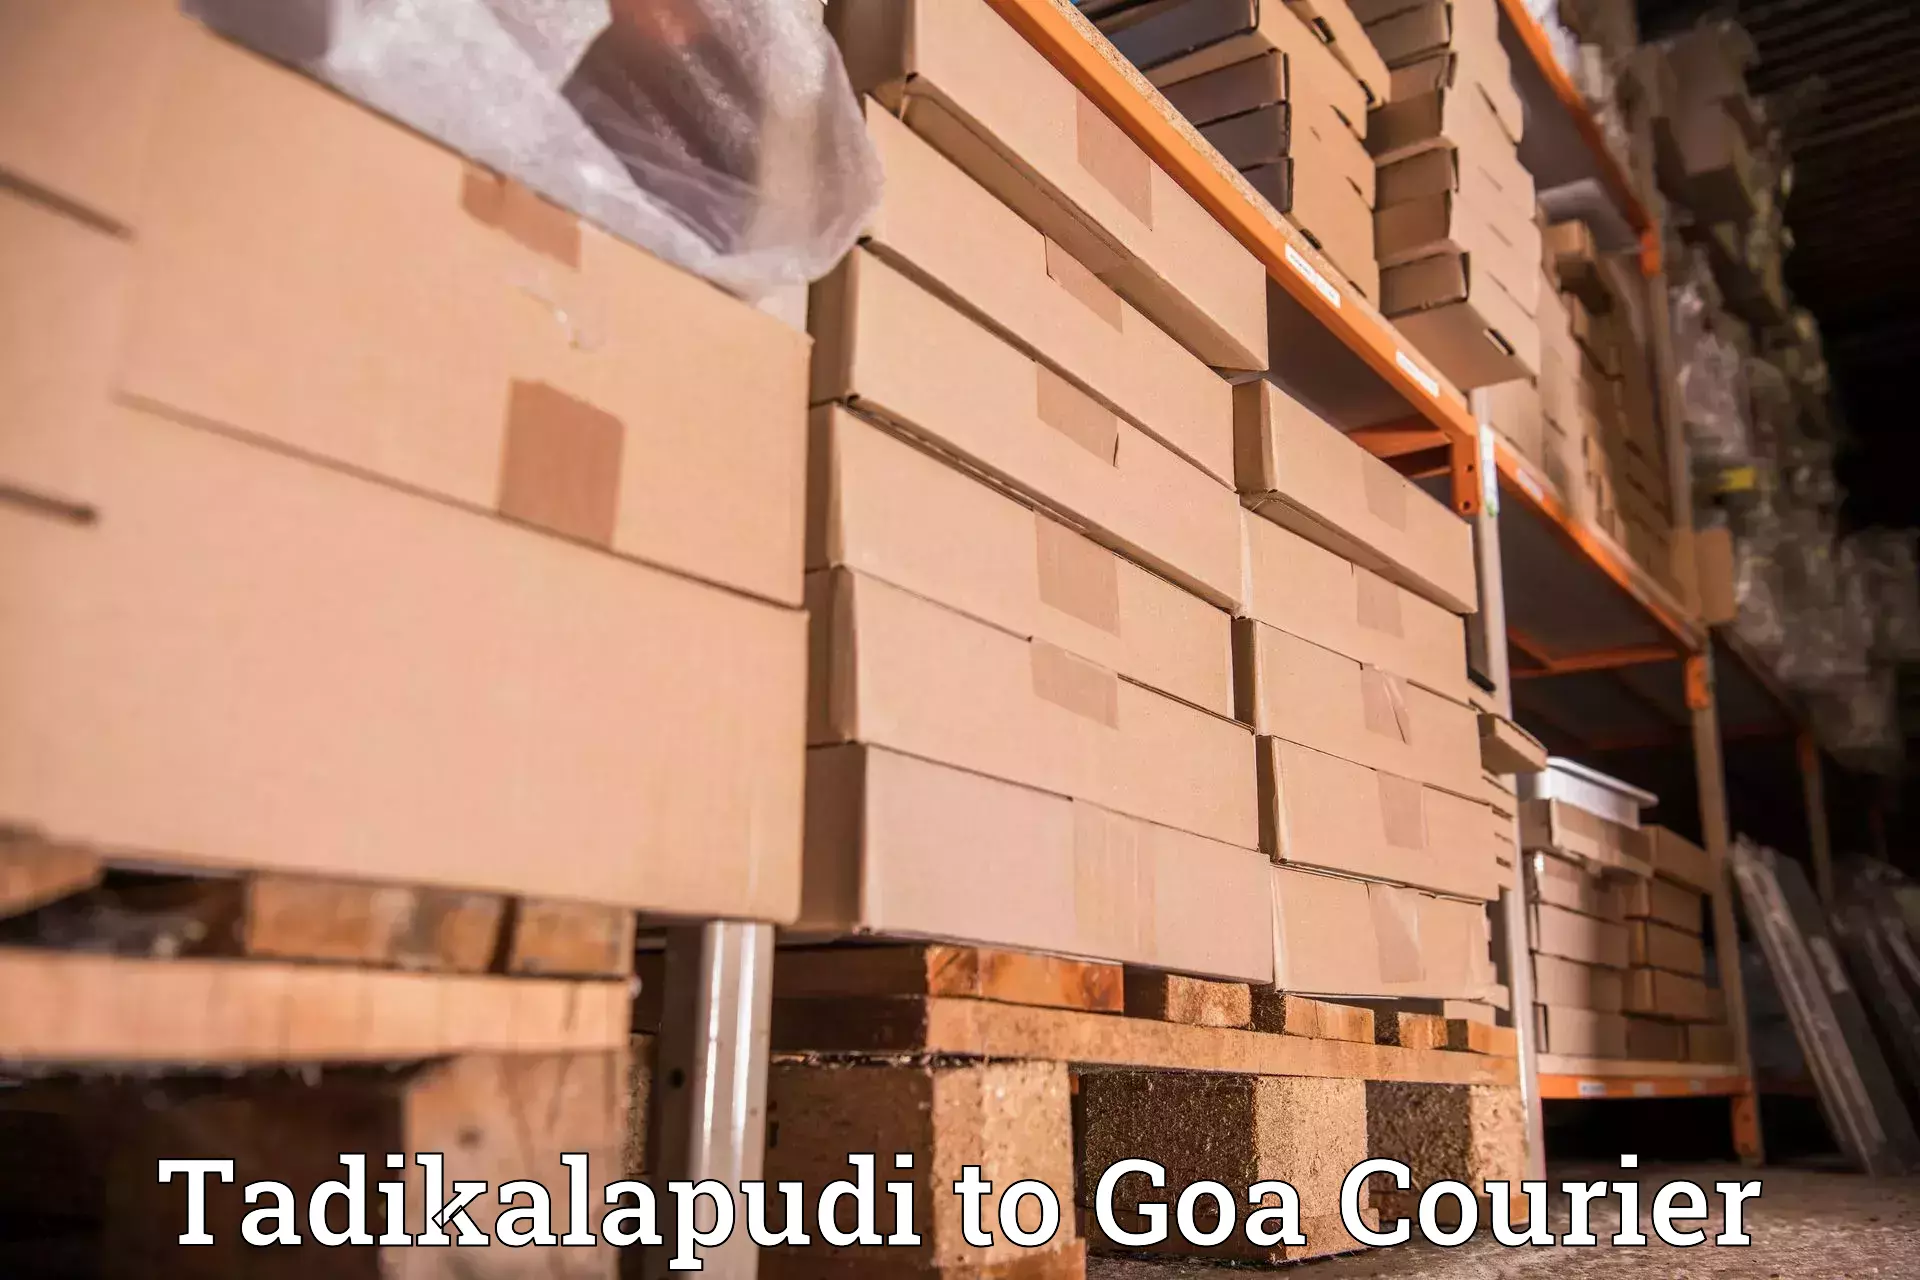 Efficient logistics management Tadikalapudi to South Goa